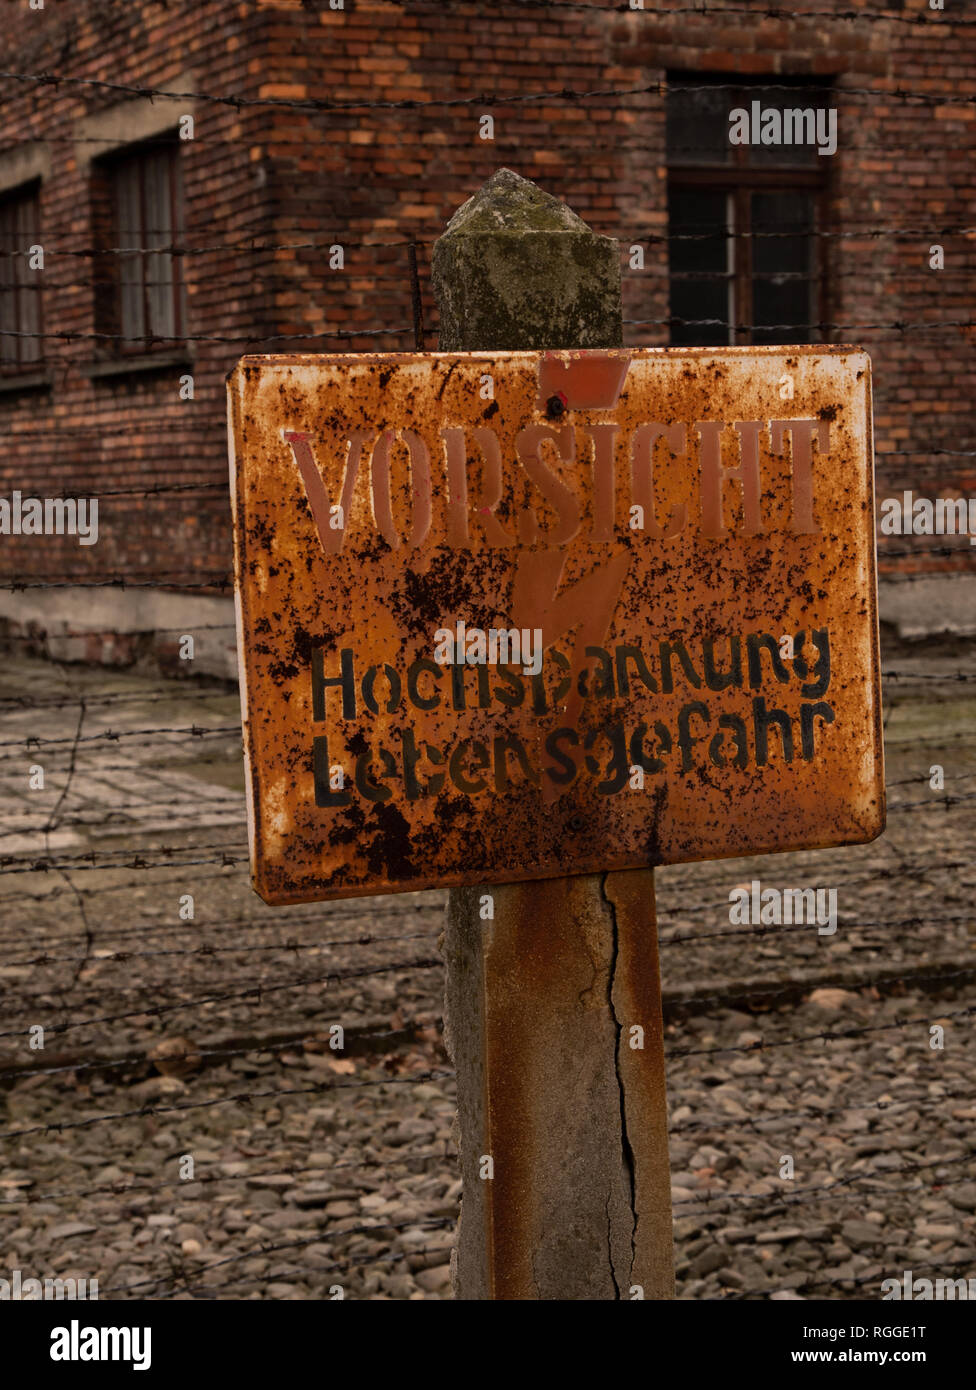 Clôture électrique panneau "vorsicht hochspannung lebensgefahr', Auschwitz, camp de concentration et d'extermination d'Oswiecim, Pologne Banque D'Images